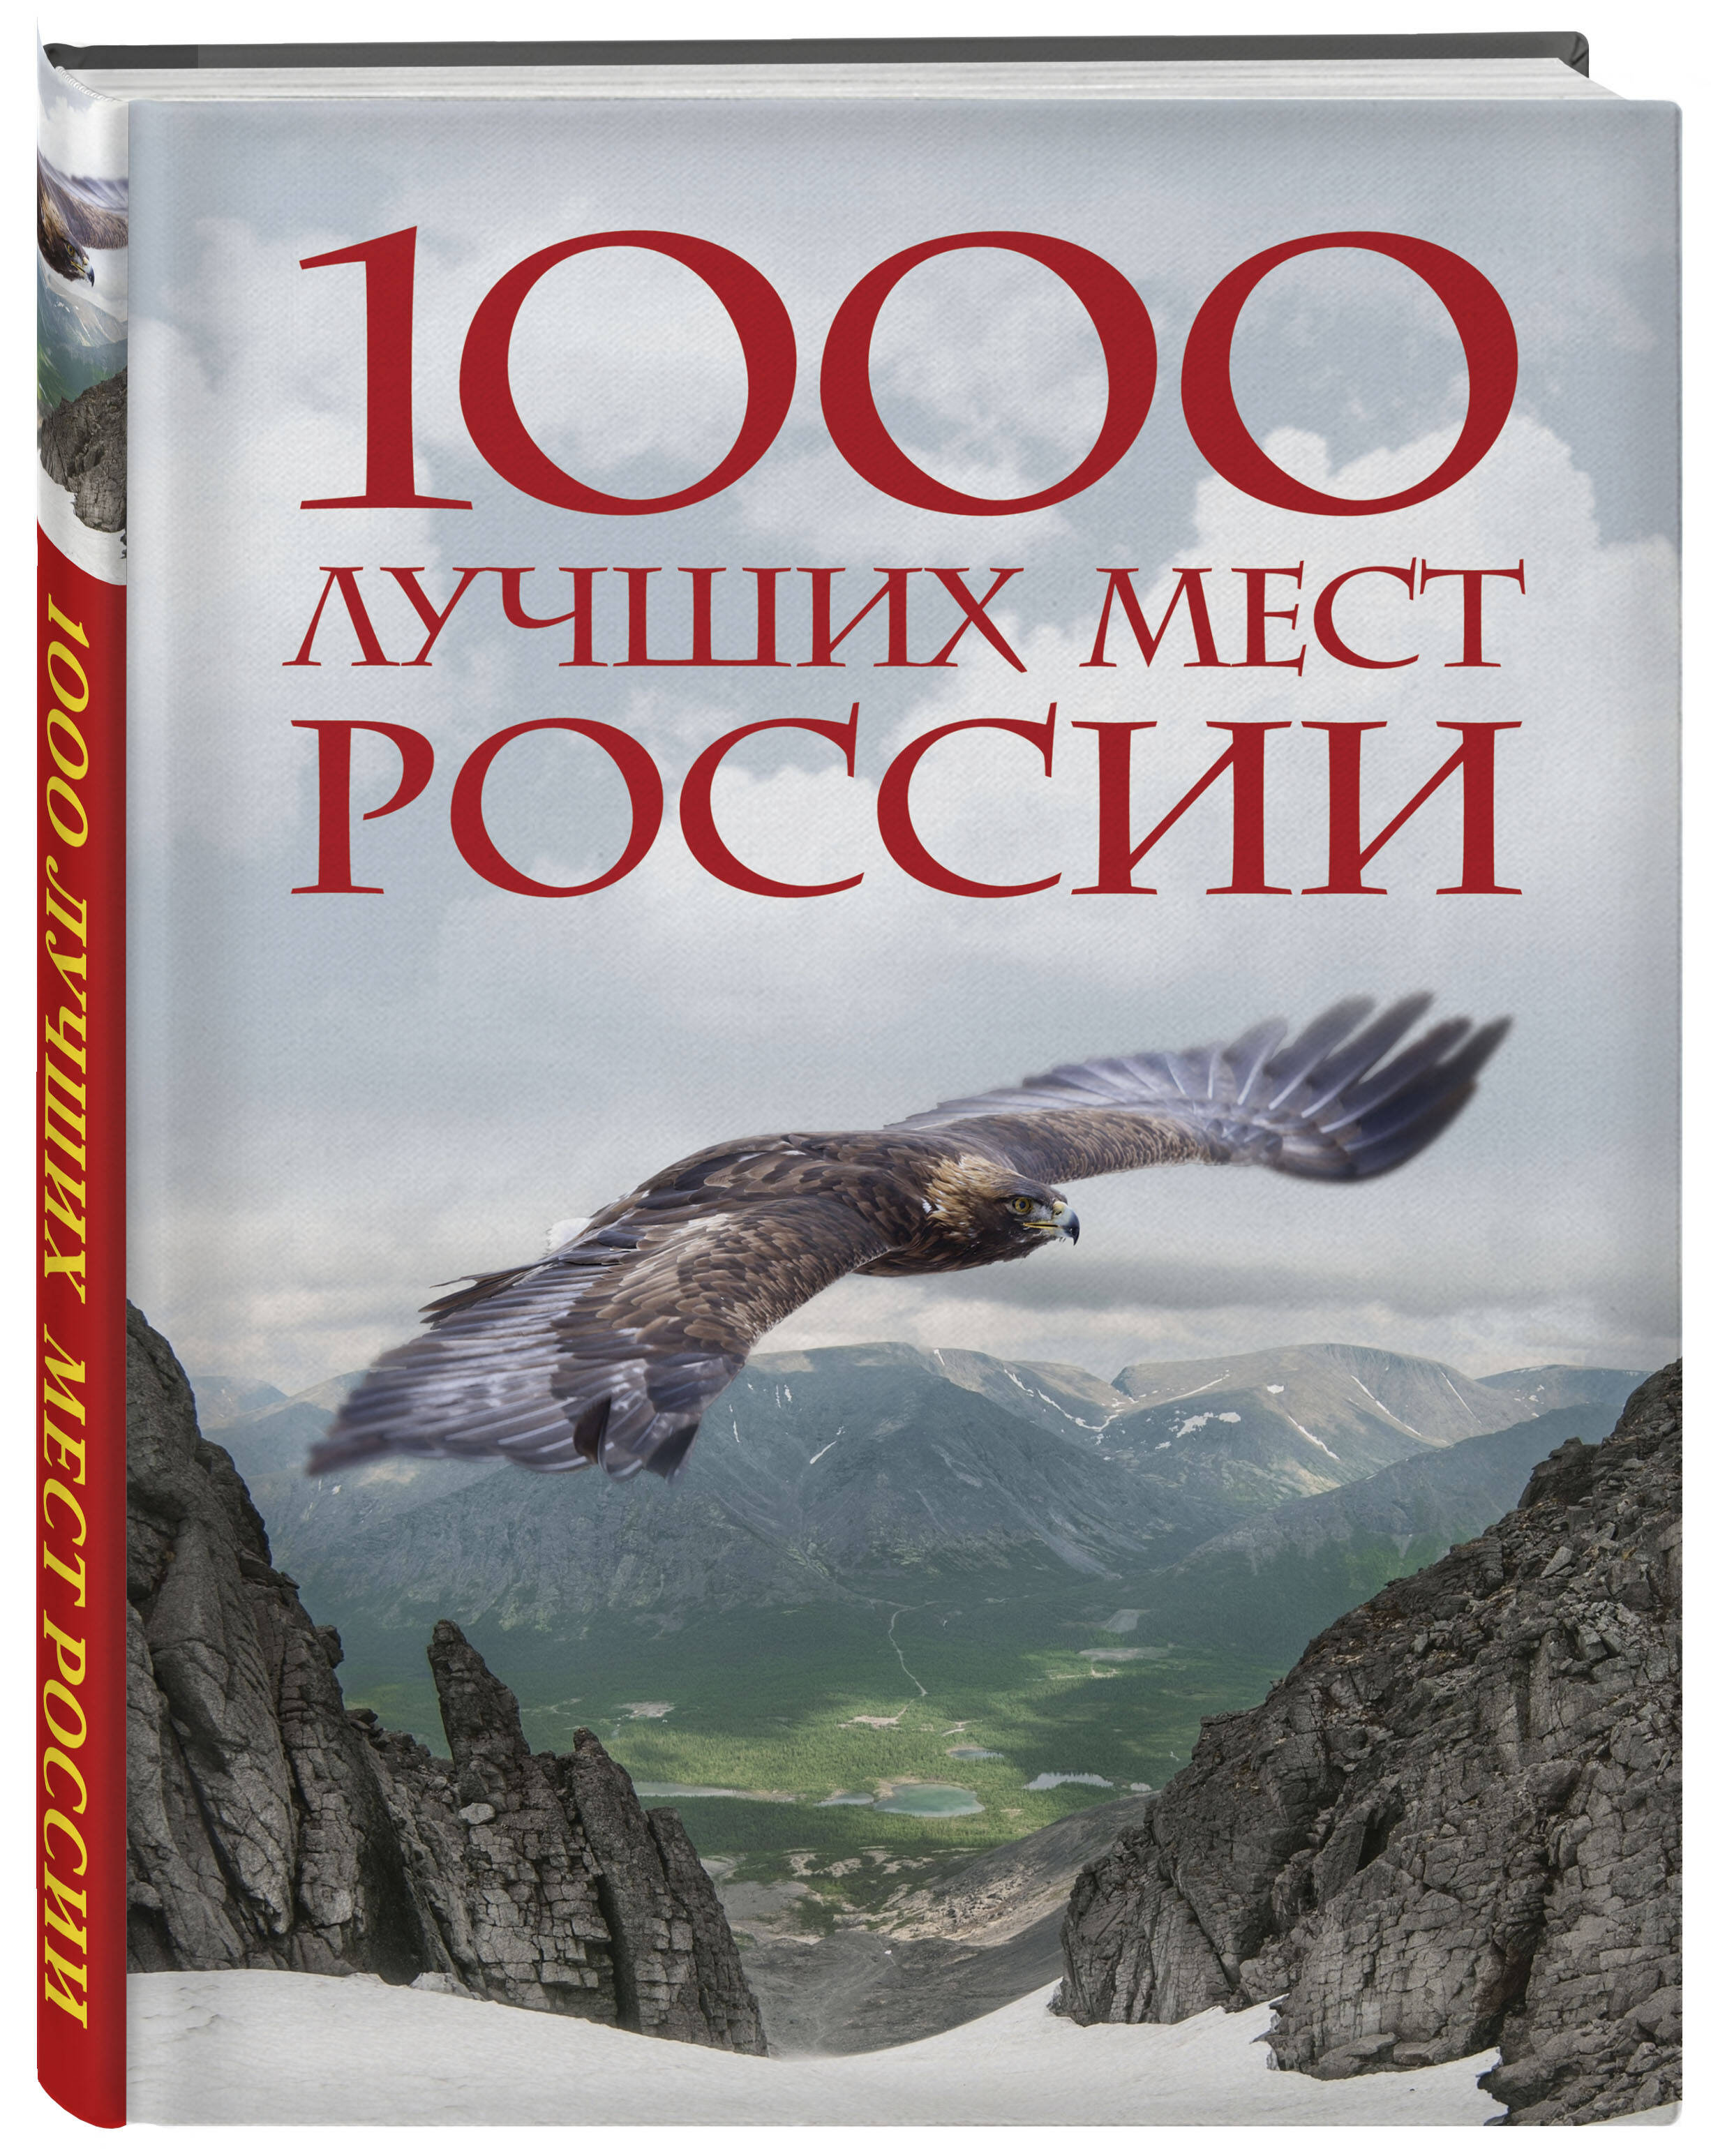 1000 лучших мест России, которые нужно увидеть за свою жизнь. 4-е издание